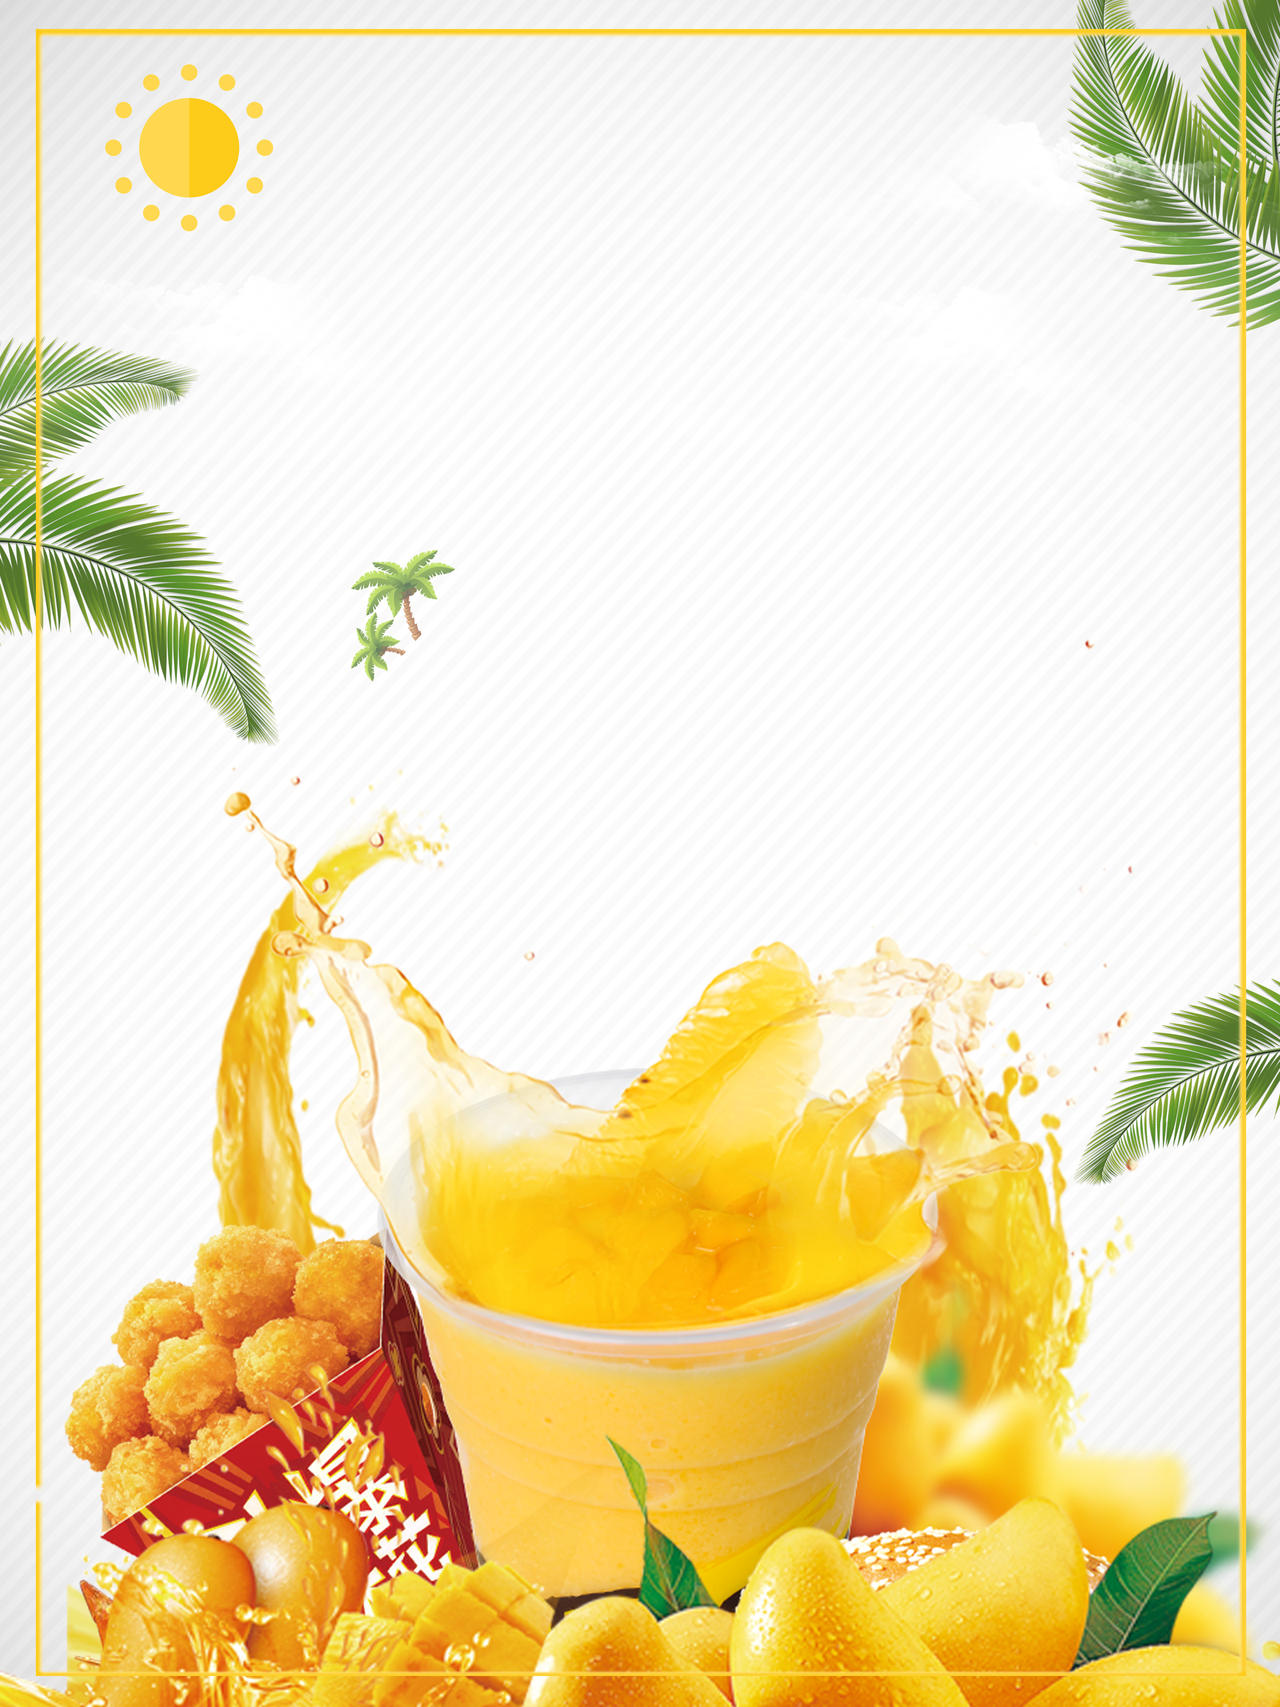 夏日风情芒果奶茶饮品促销海报白色背景海报背景